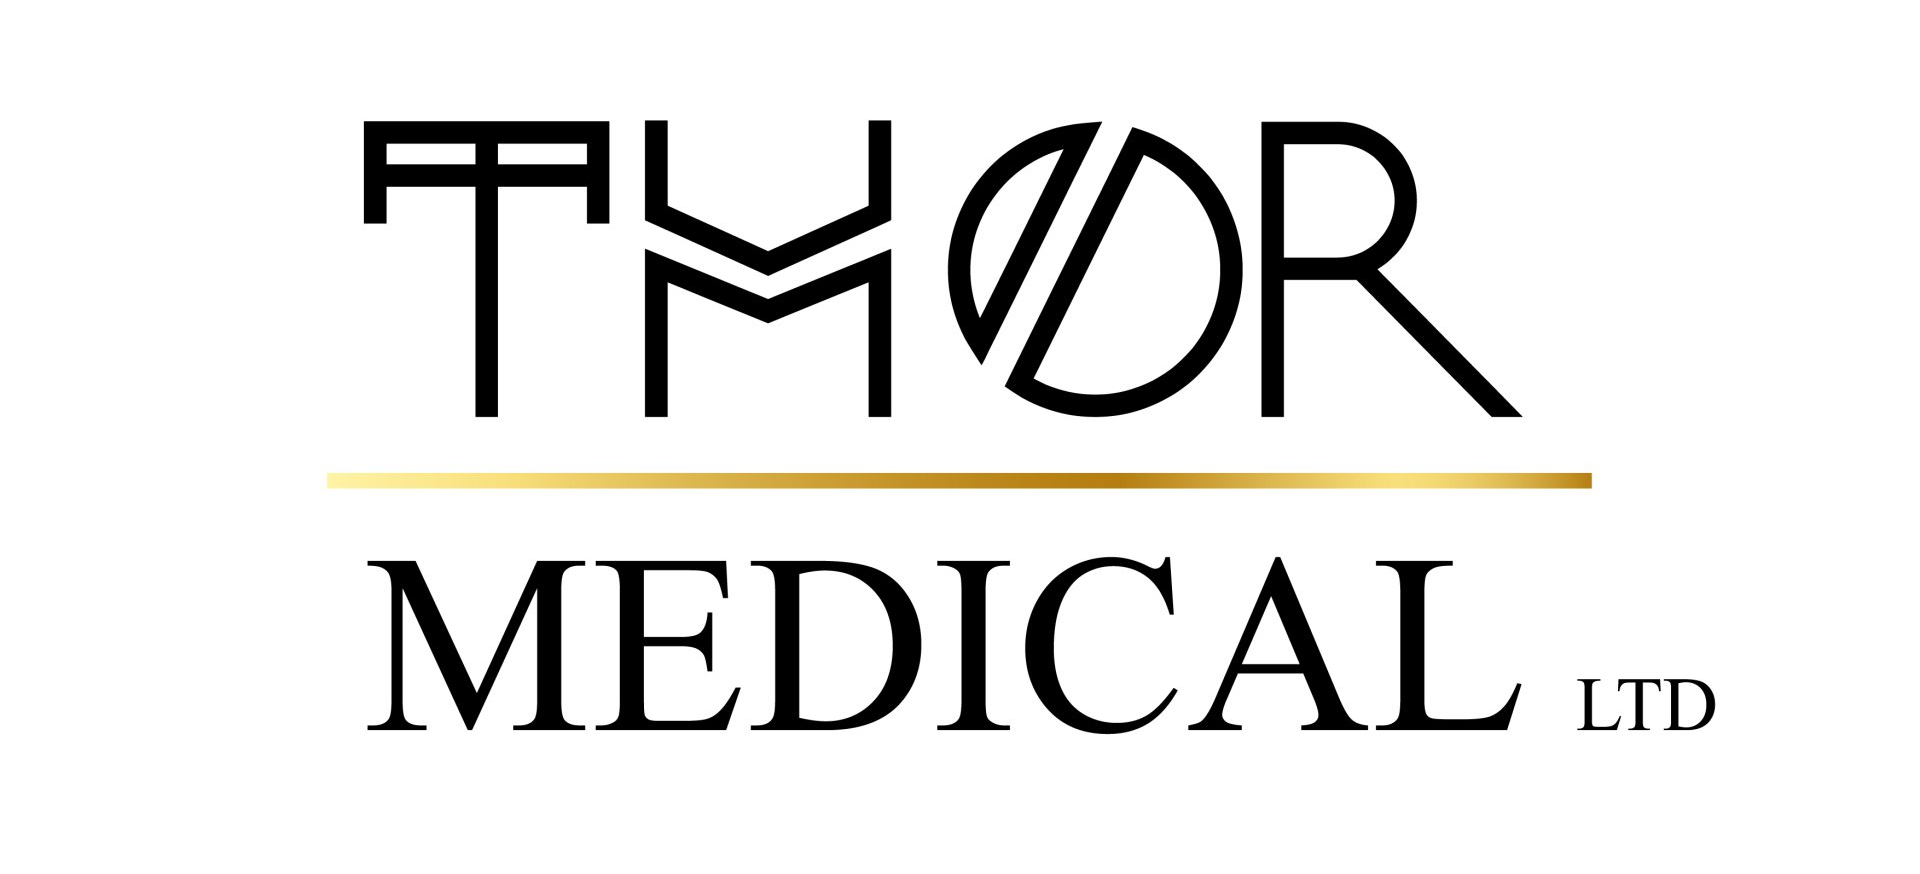 Film medic, tv medic, Thor medical logo